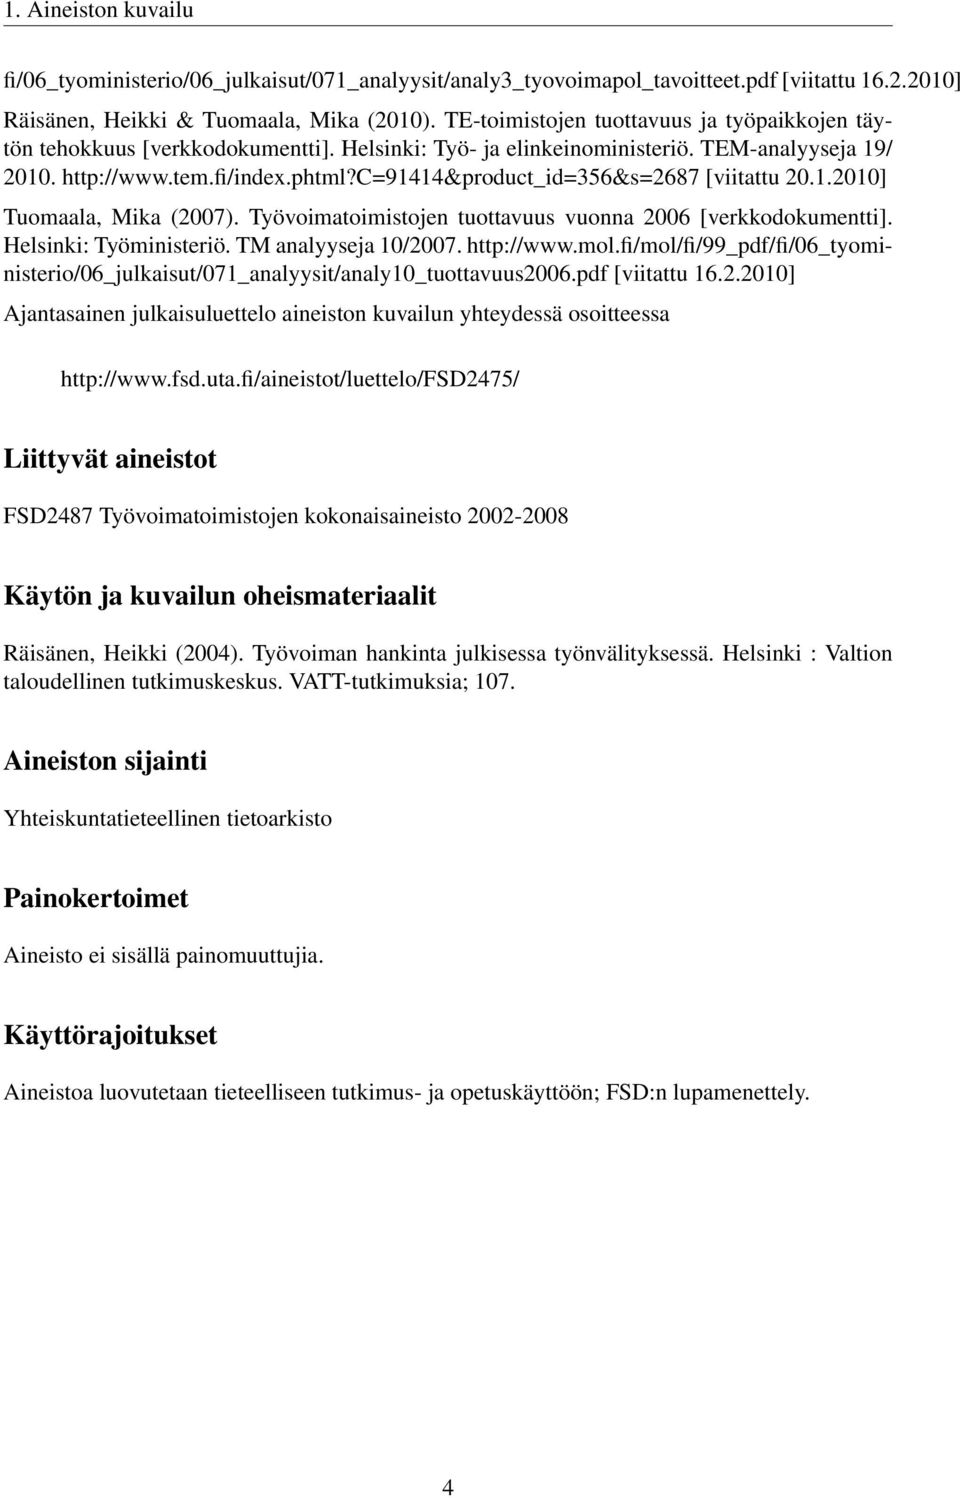 c=91414&product_id=356&s=2687 [viitattu 20.1.2010] Tuomaala, Mika (2007). Työvoimatoimistojen tuottavuus vuonna 2006 [verkkodokumentti]. Helsinki: Työministeriö. TM analyyseja 10/2007. http://www.mol.